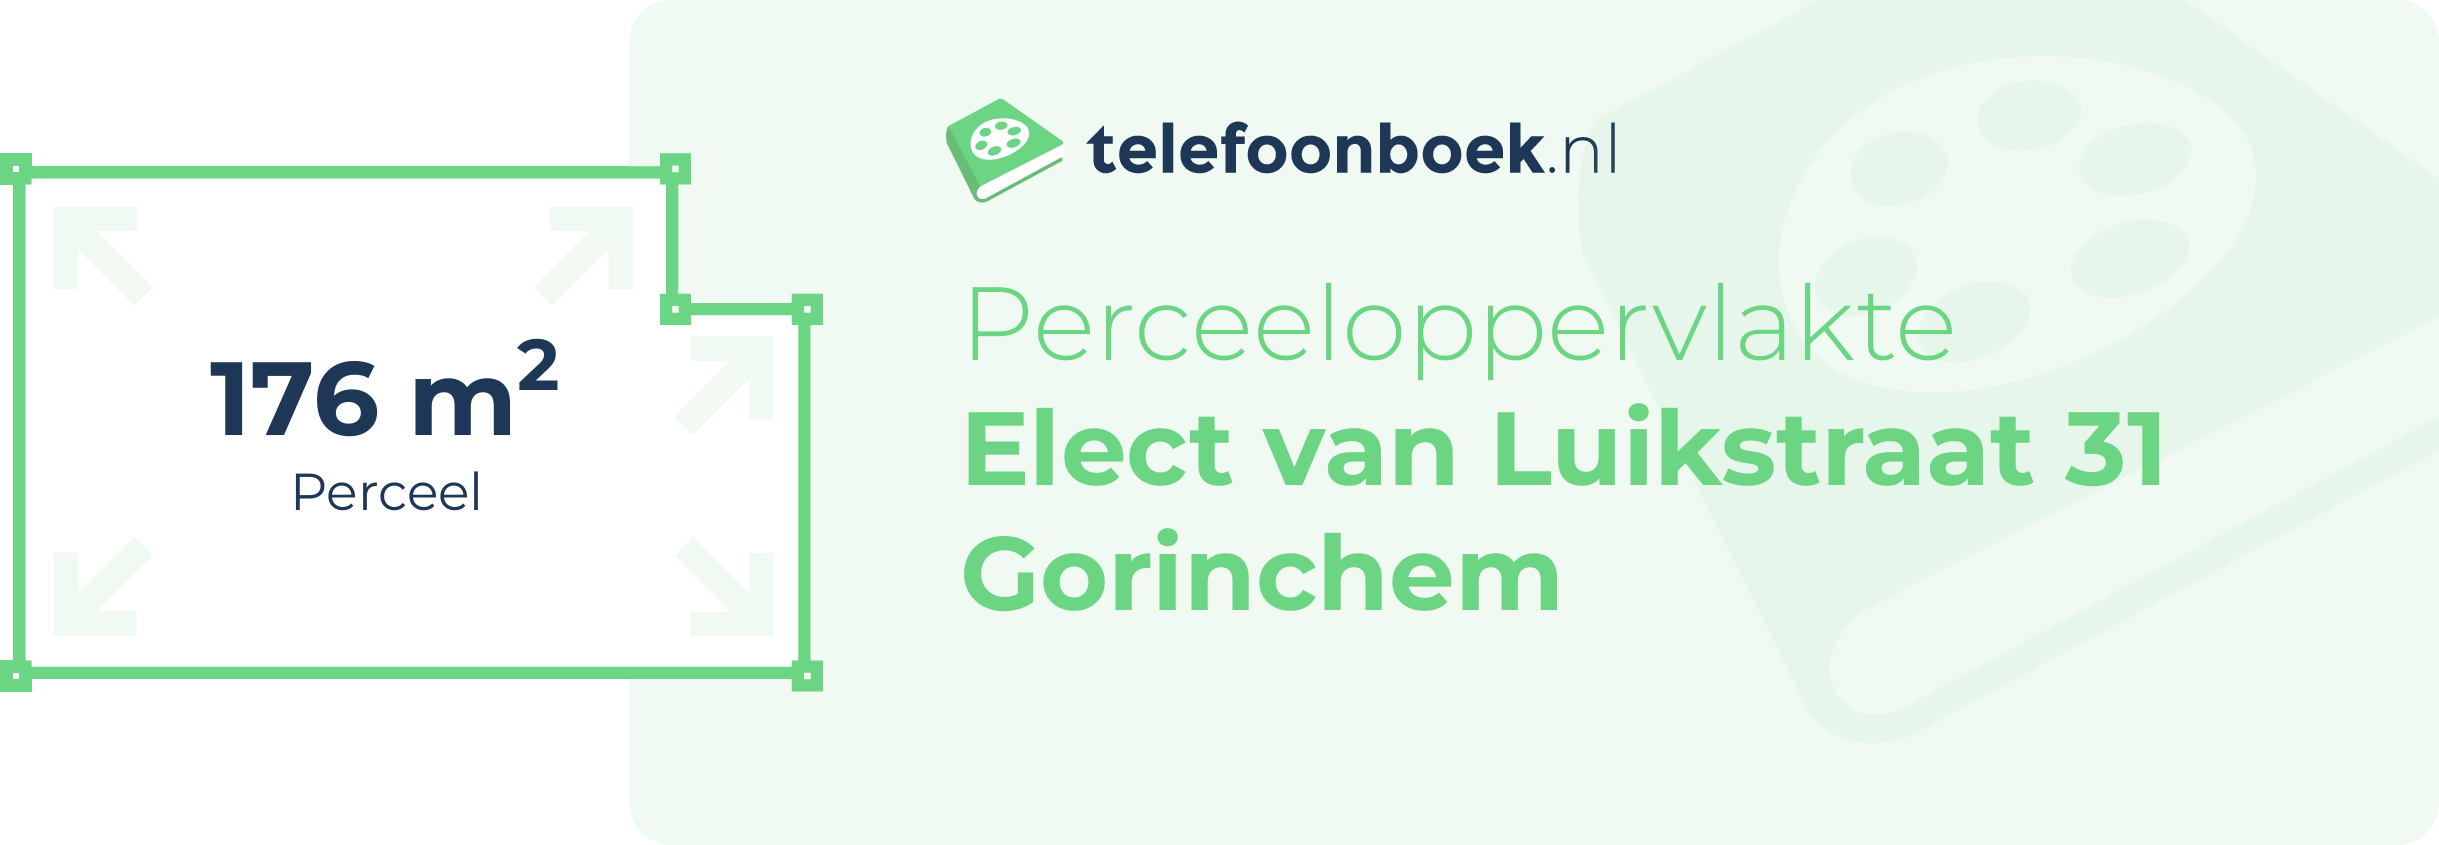 Perceeloppervlakte Elect Van Luikstraat 31 Gorinchem